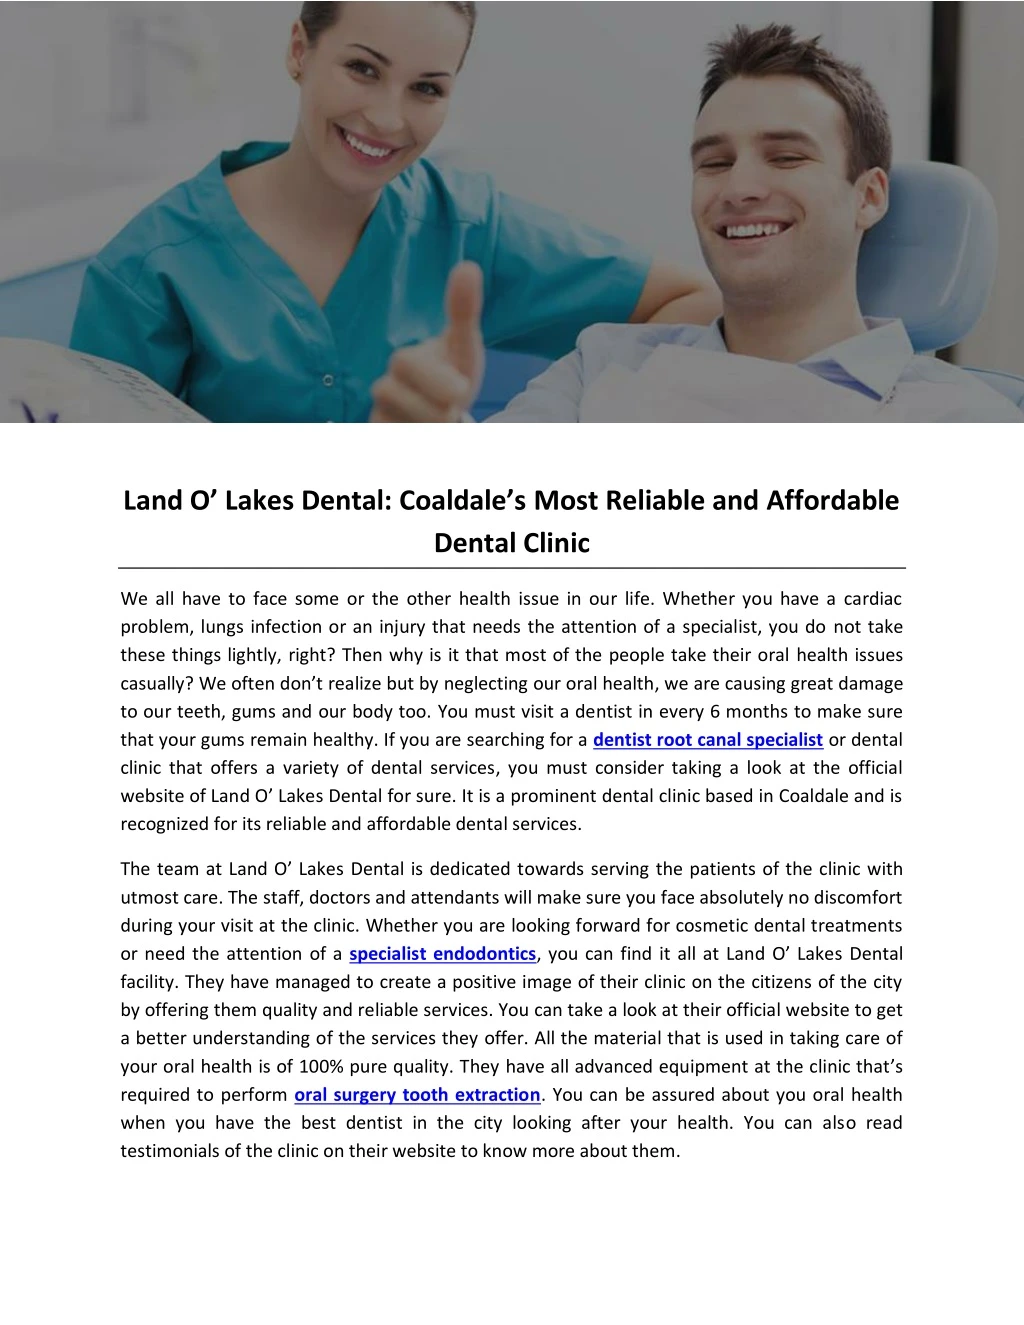 land o lake s dental coaldale s most reliable